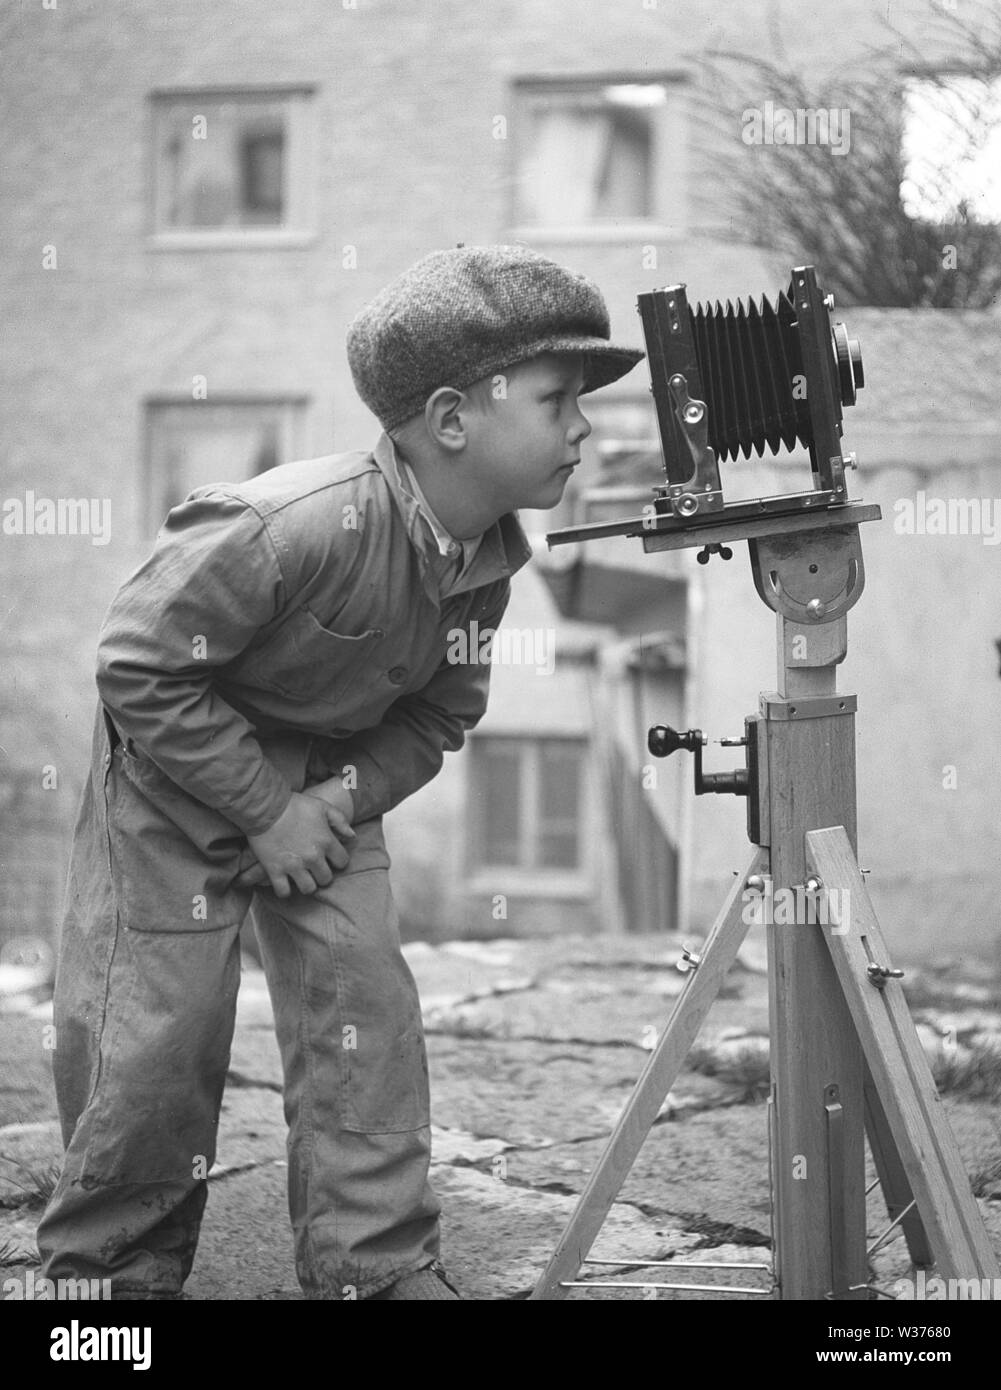 Junge in den 1940er Jahren. Ein neugieriges Kind schaut in eine Kamera auf einem Stativ montiert. Schweden 1945. Kristoffersson Ref N 107-5 Stockfoto